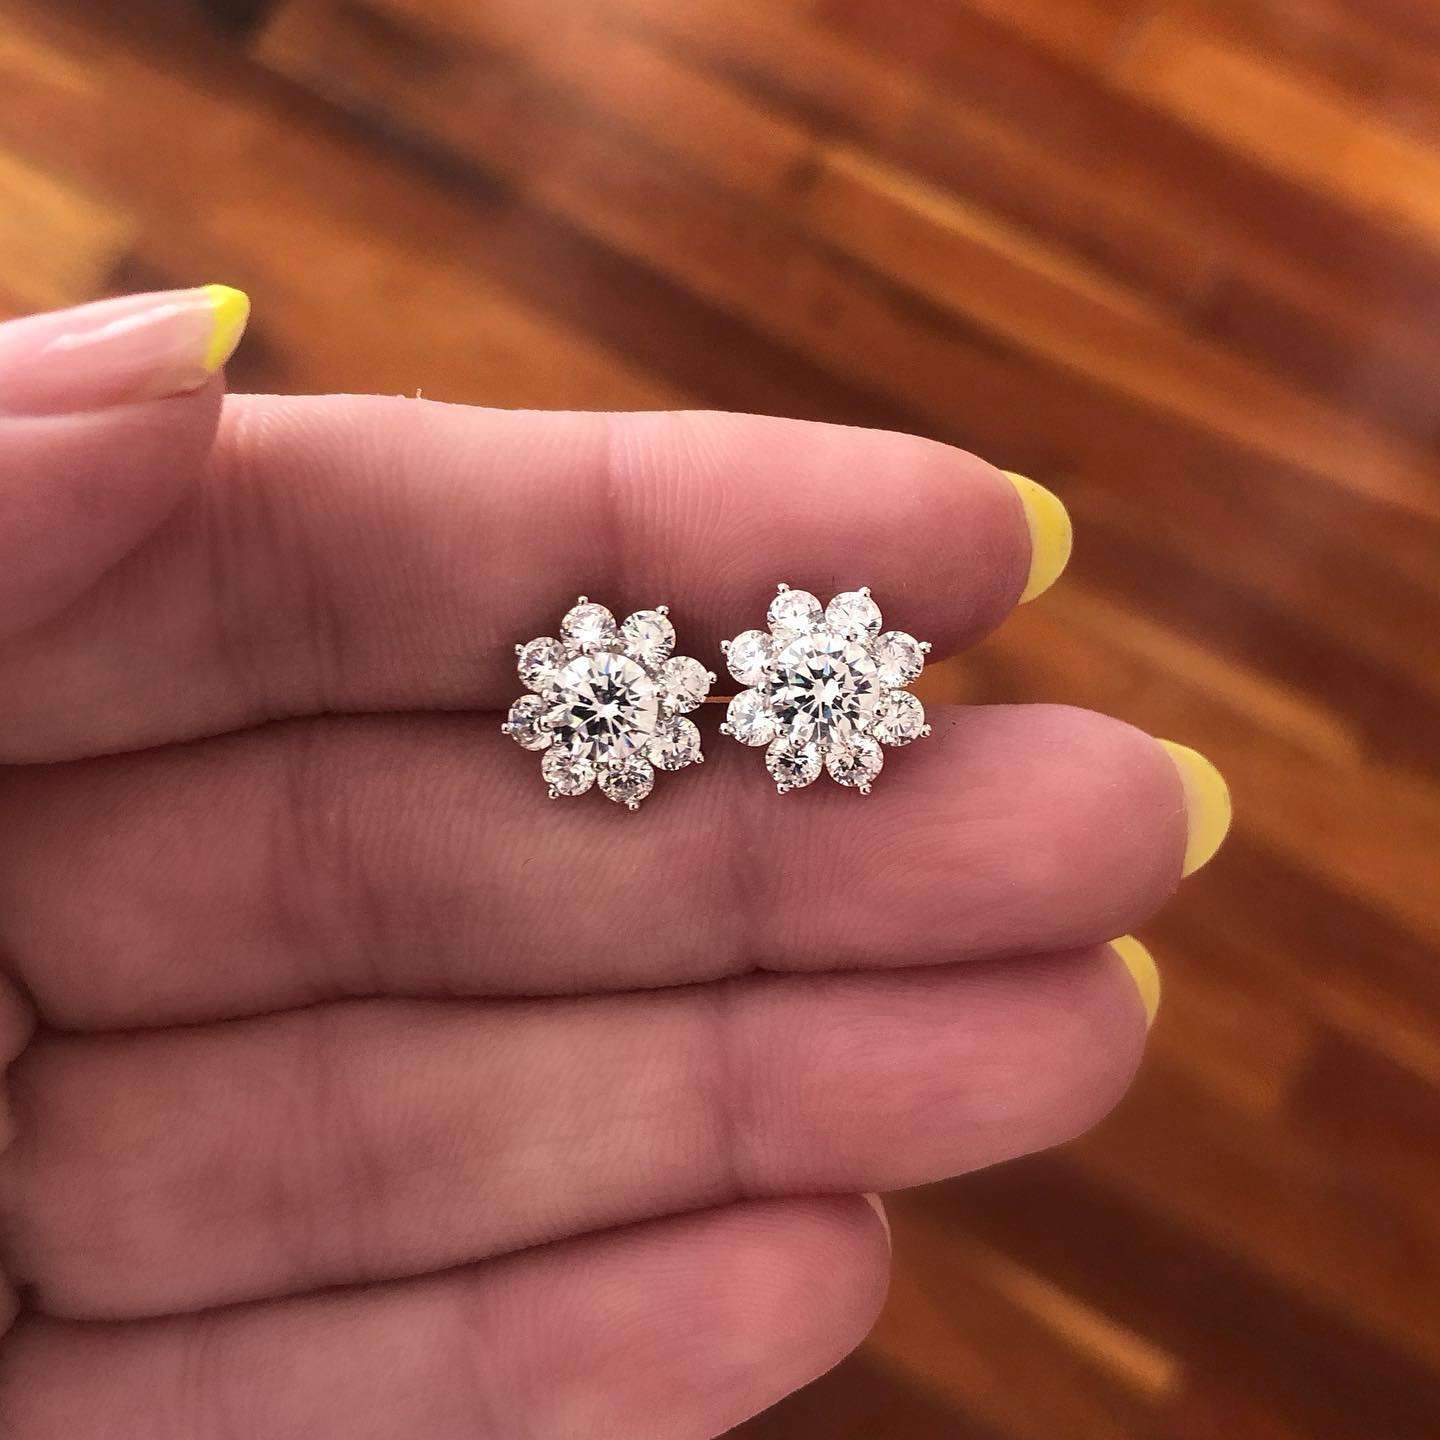 pairing stud earrings